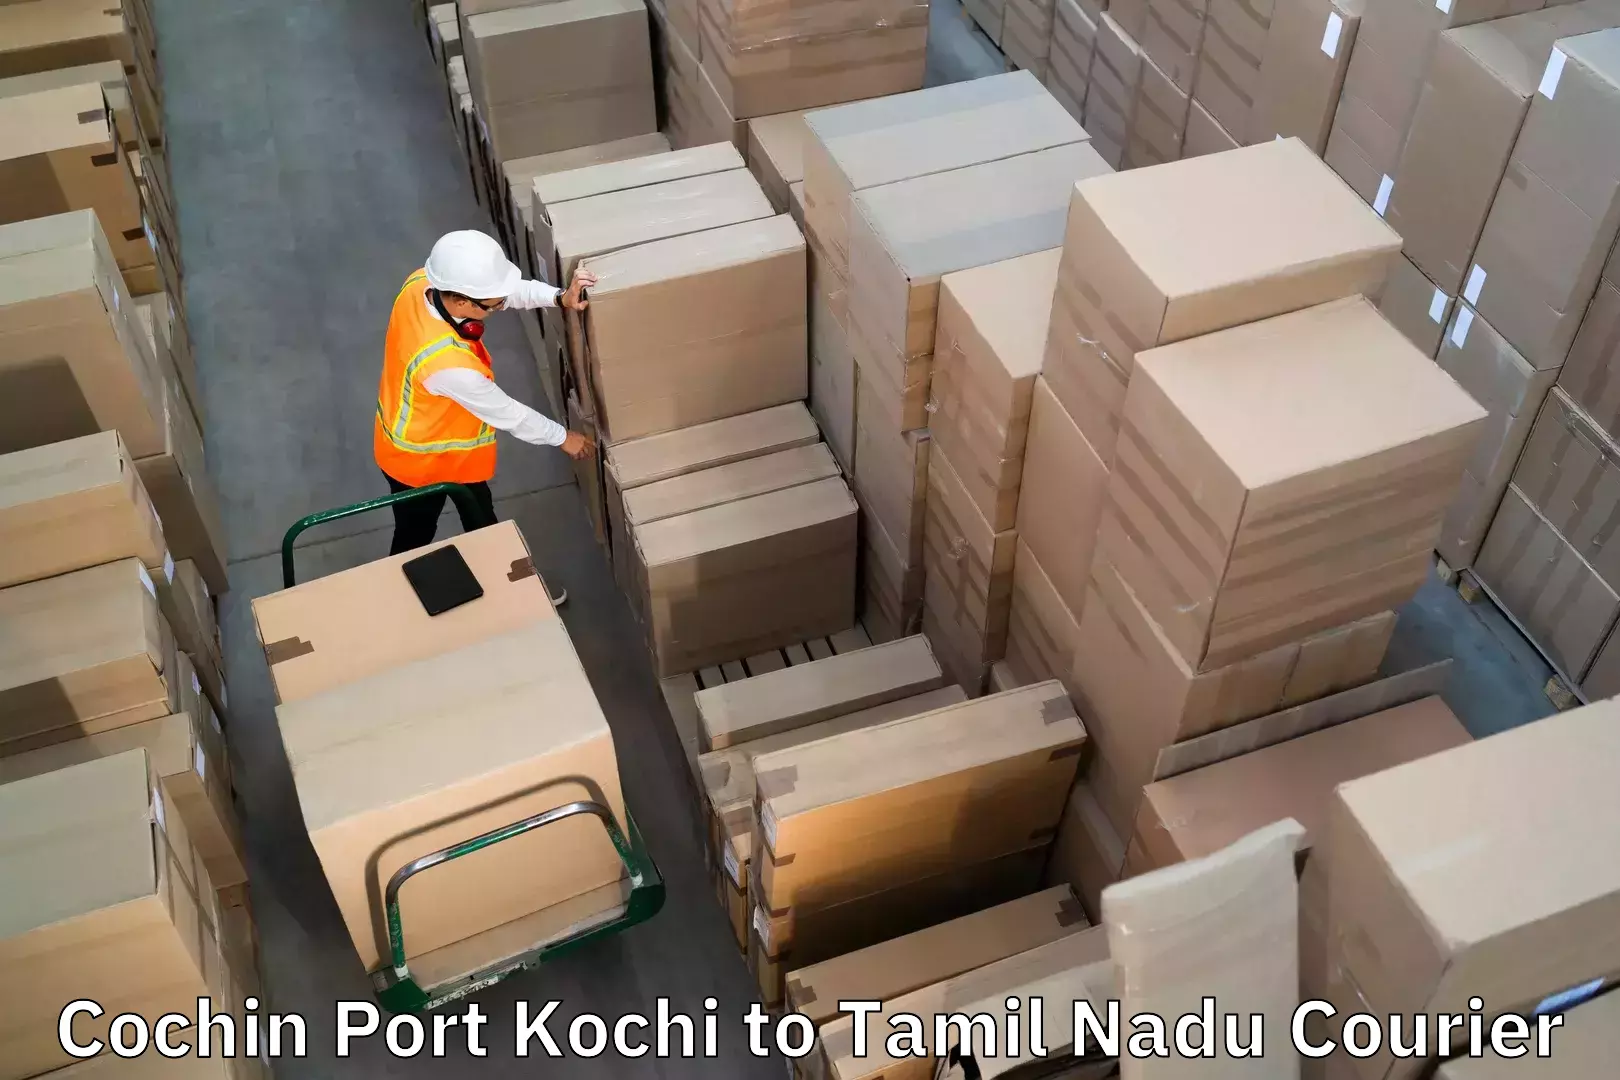 Baggage transport network Cochin Port Kochi to Thiruthuraipoondi